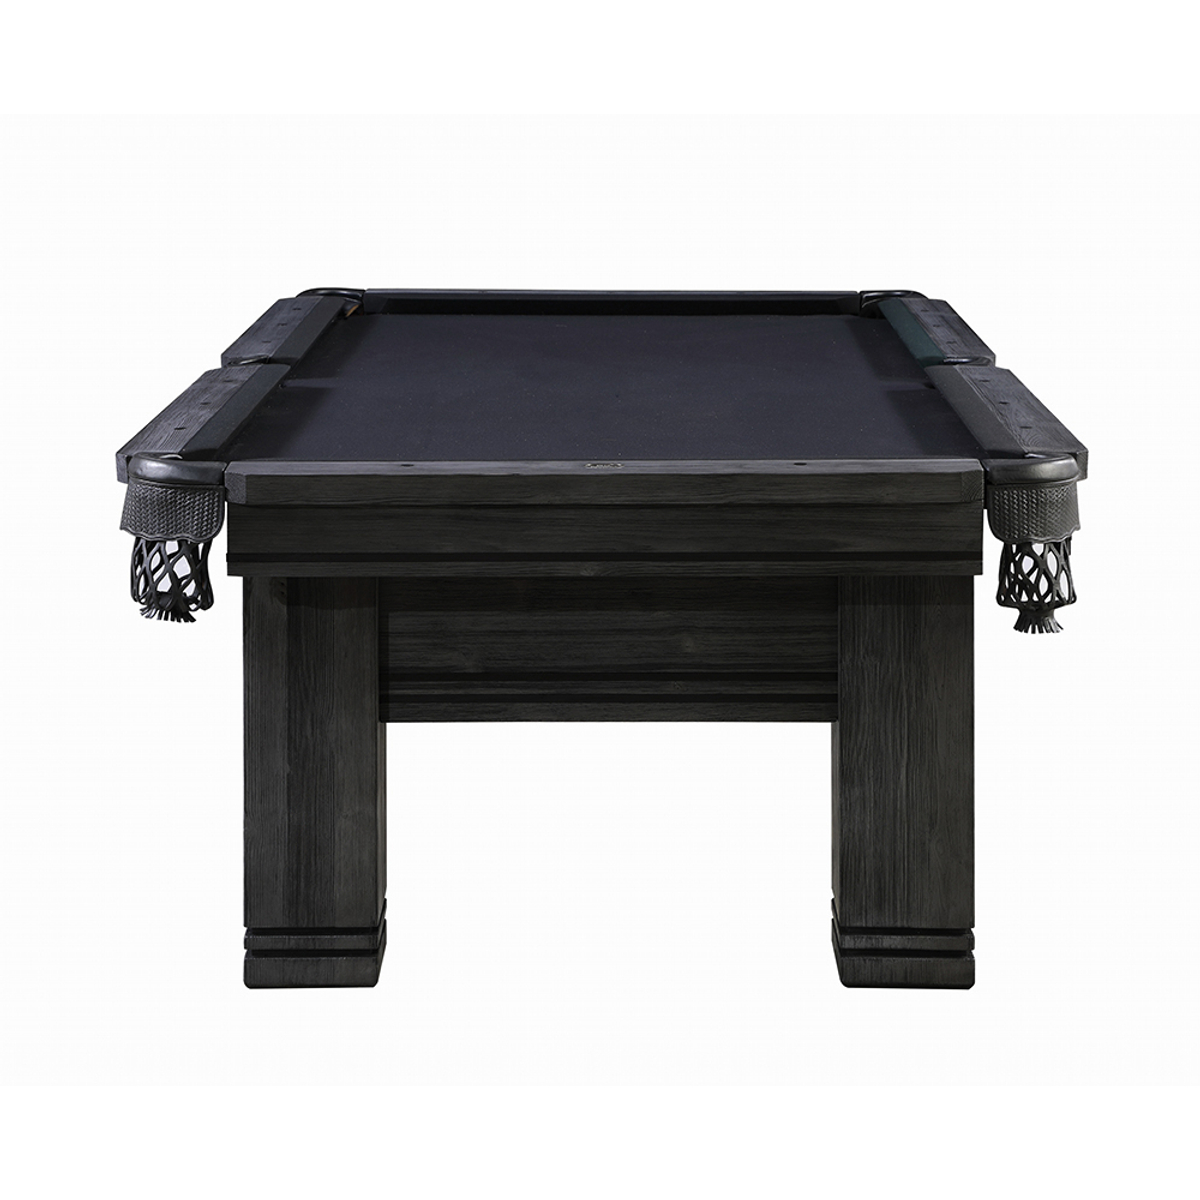 Top Table Lexor Pooltafel Emperor Black Oak 8FT